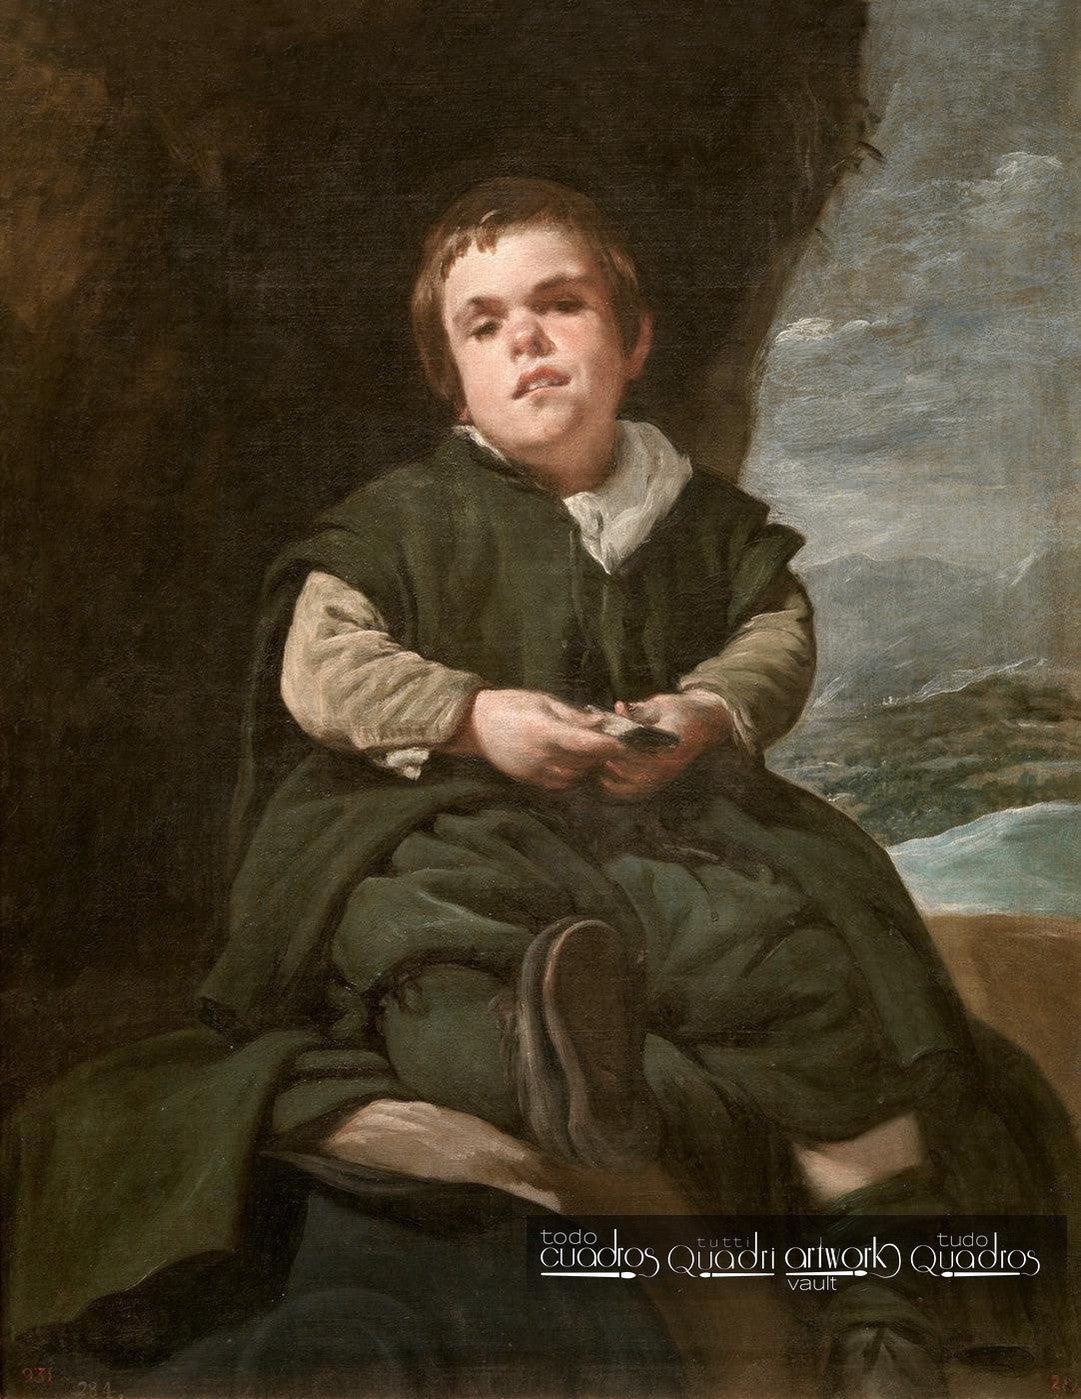 The Boy from Vallecas (Francisco Lezcano), Velázquez